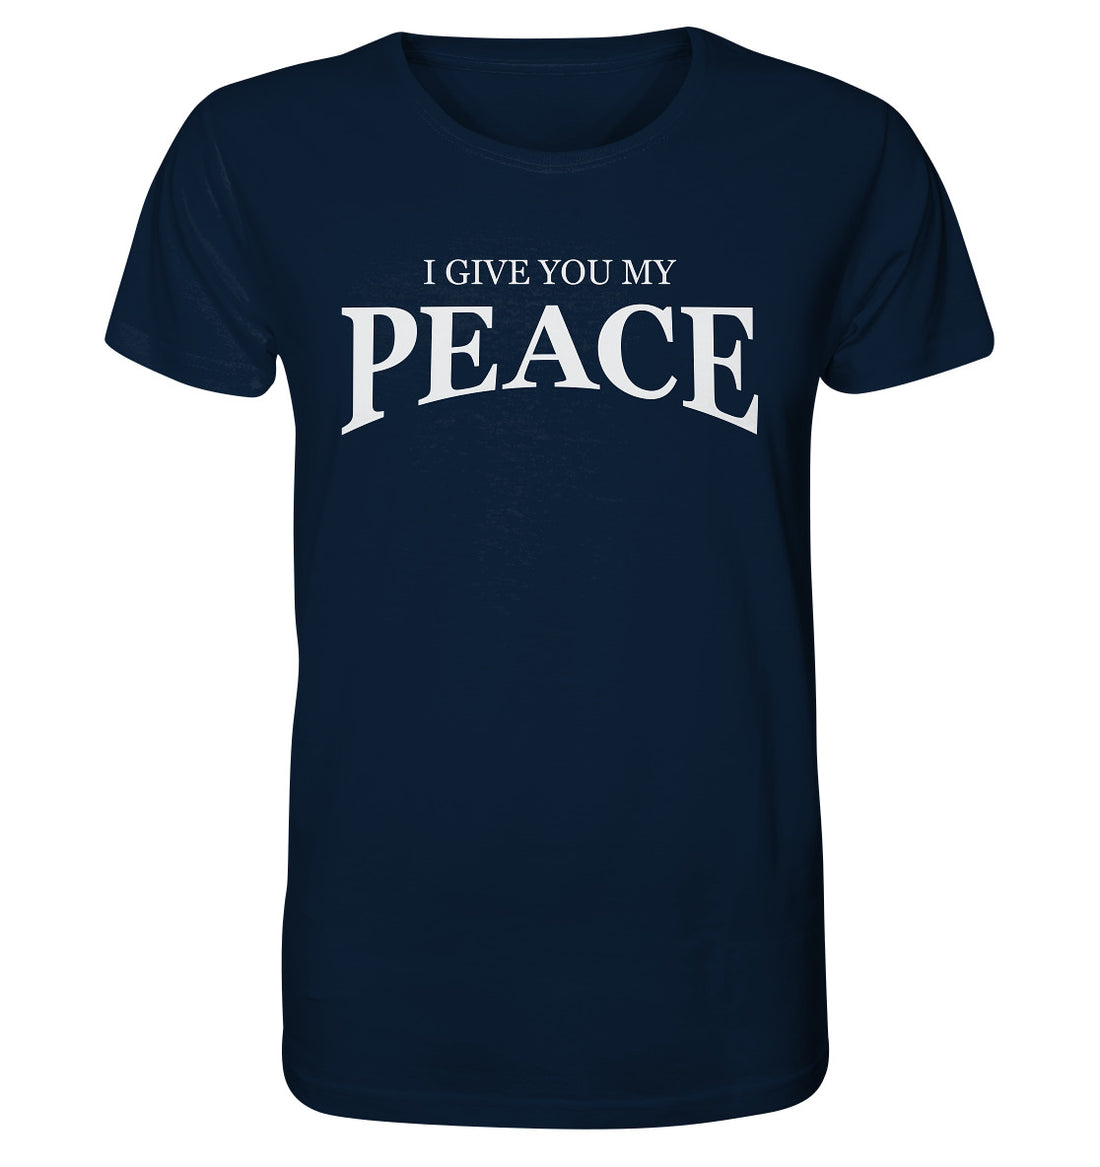 Joh 14,27 - PEACE - Organic Shirt